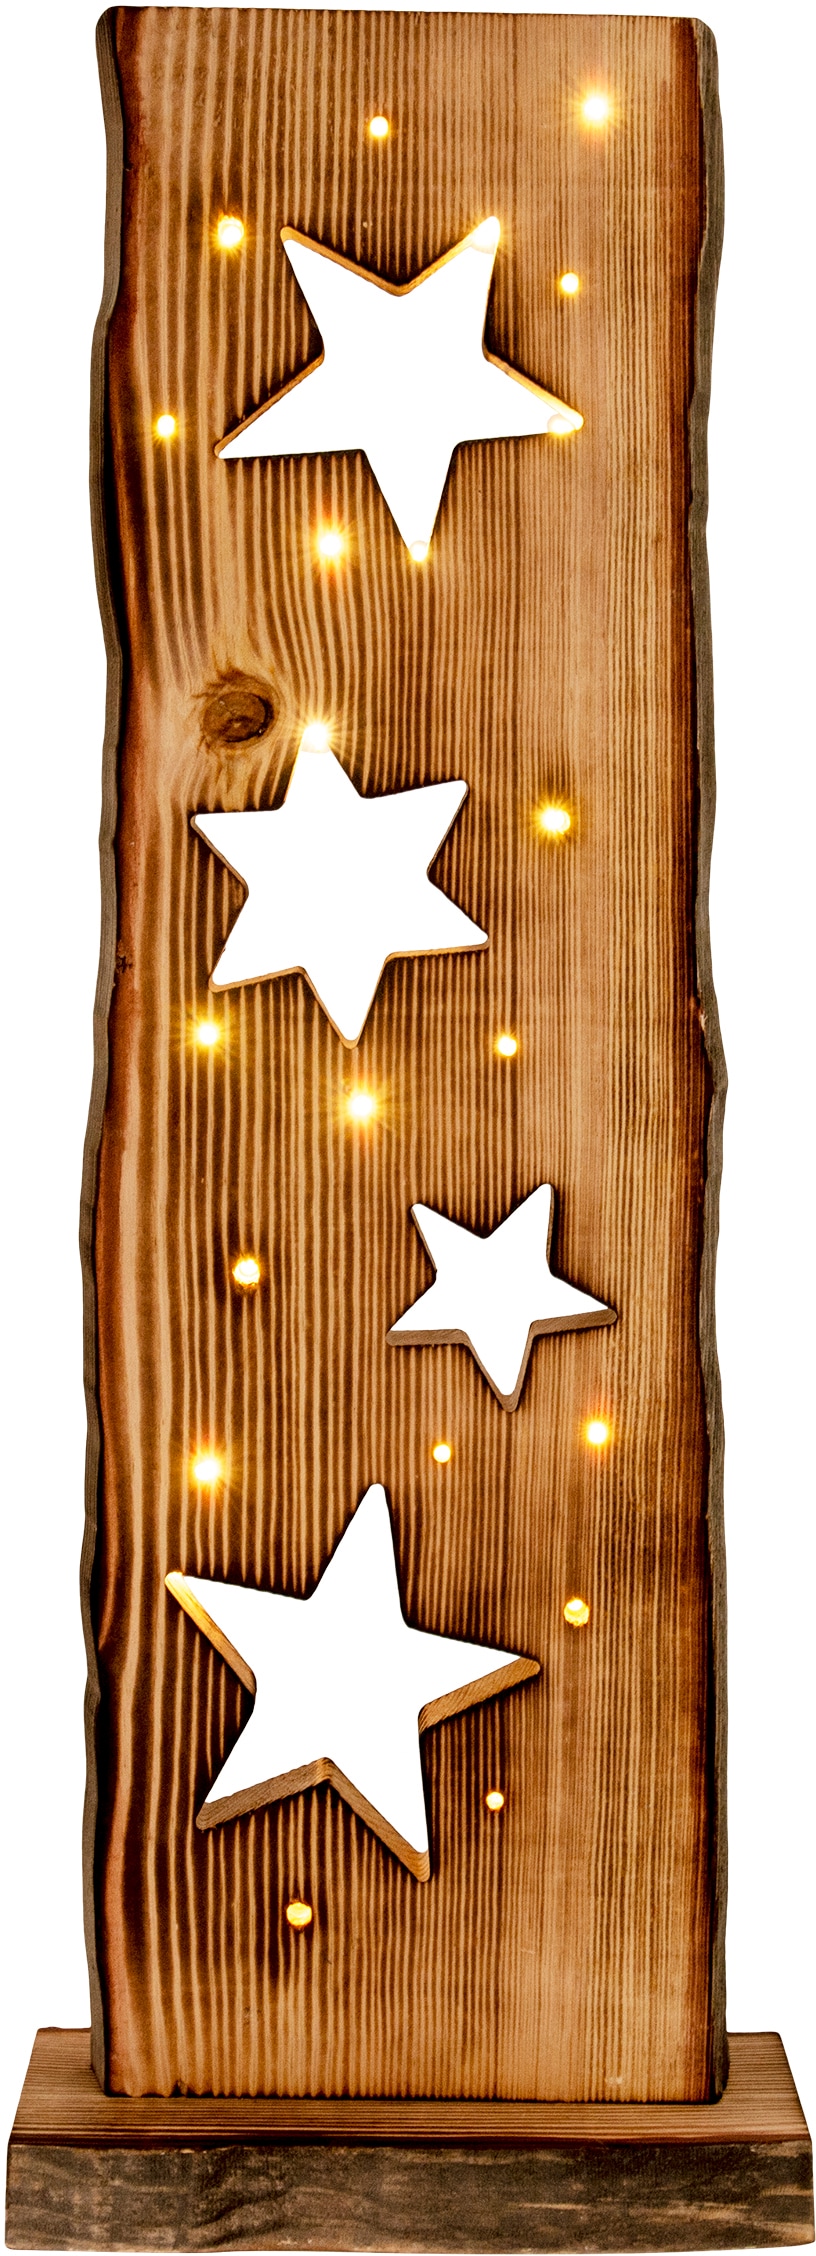 Online Shop »LED-Holz-Weihnachtsleuchte LEDs Sternemotiv, näve incl. 2800K,incl. mit im LED Gartenleuchte Batteriefach 23x OTTO (6on/18off) aussen«, Timerfunktion Weihnachtsdeko